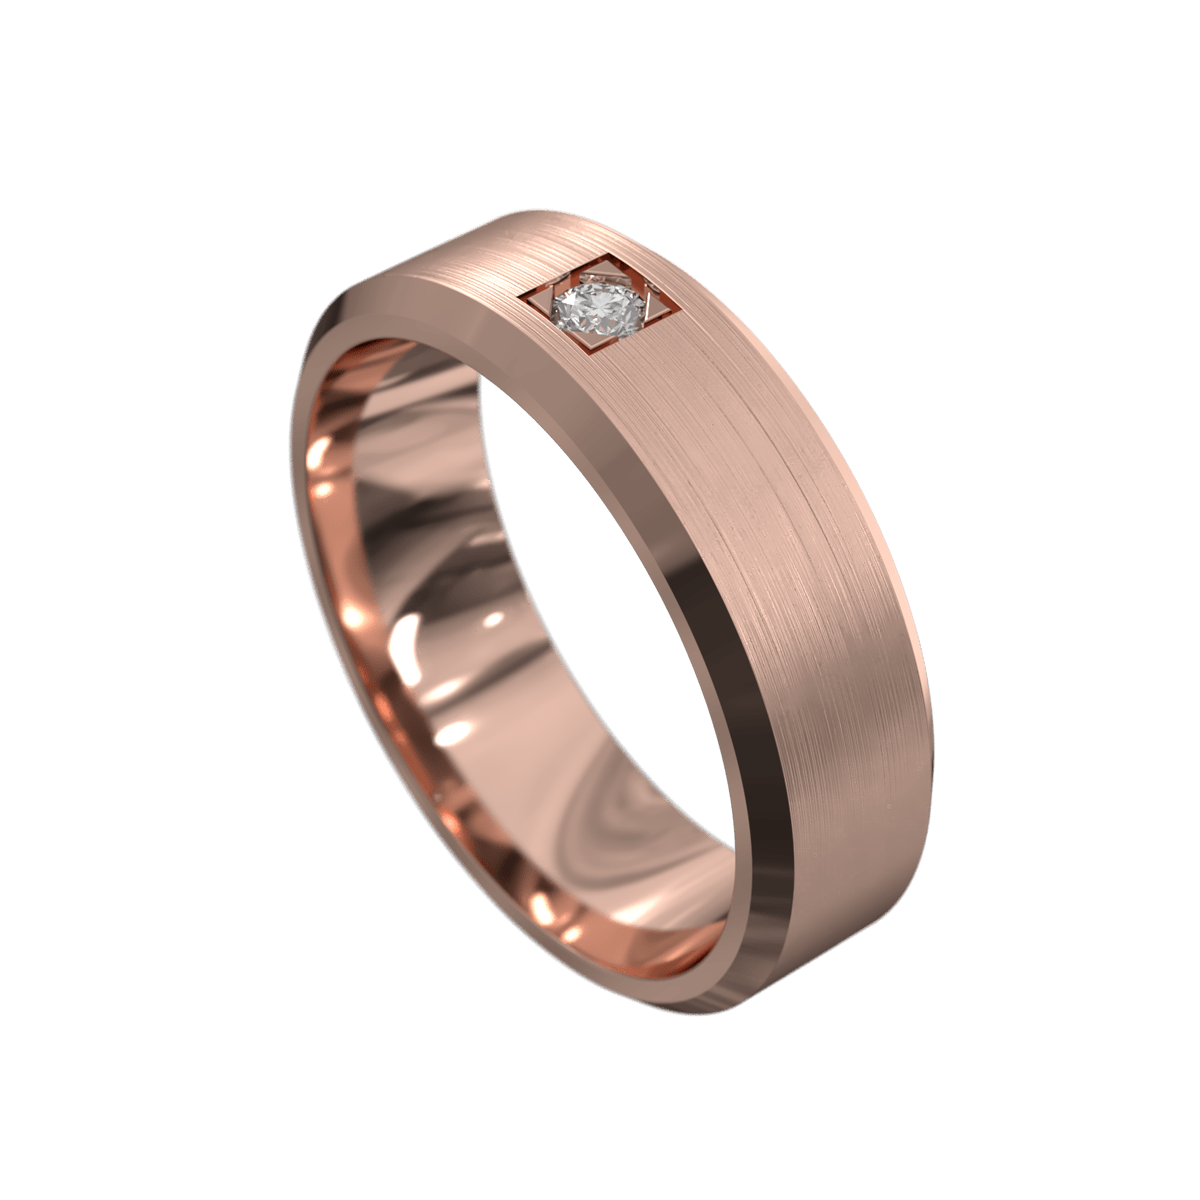 Impressive Brushed and Polished Rose Gold Mens Wedding Ring